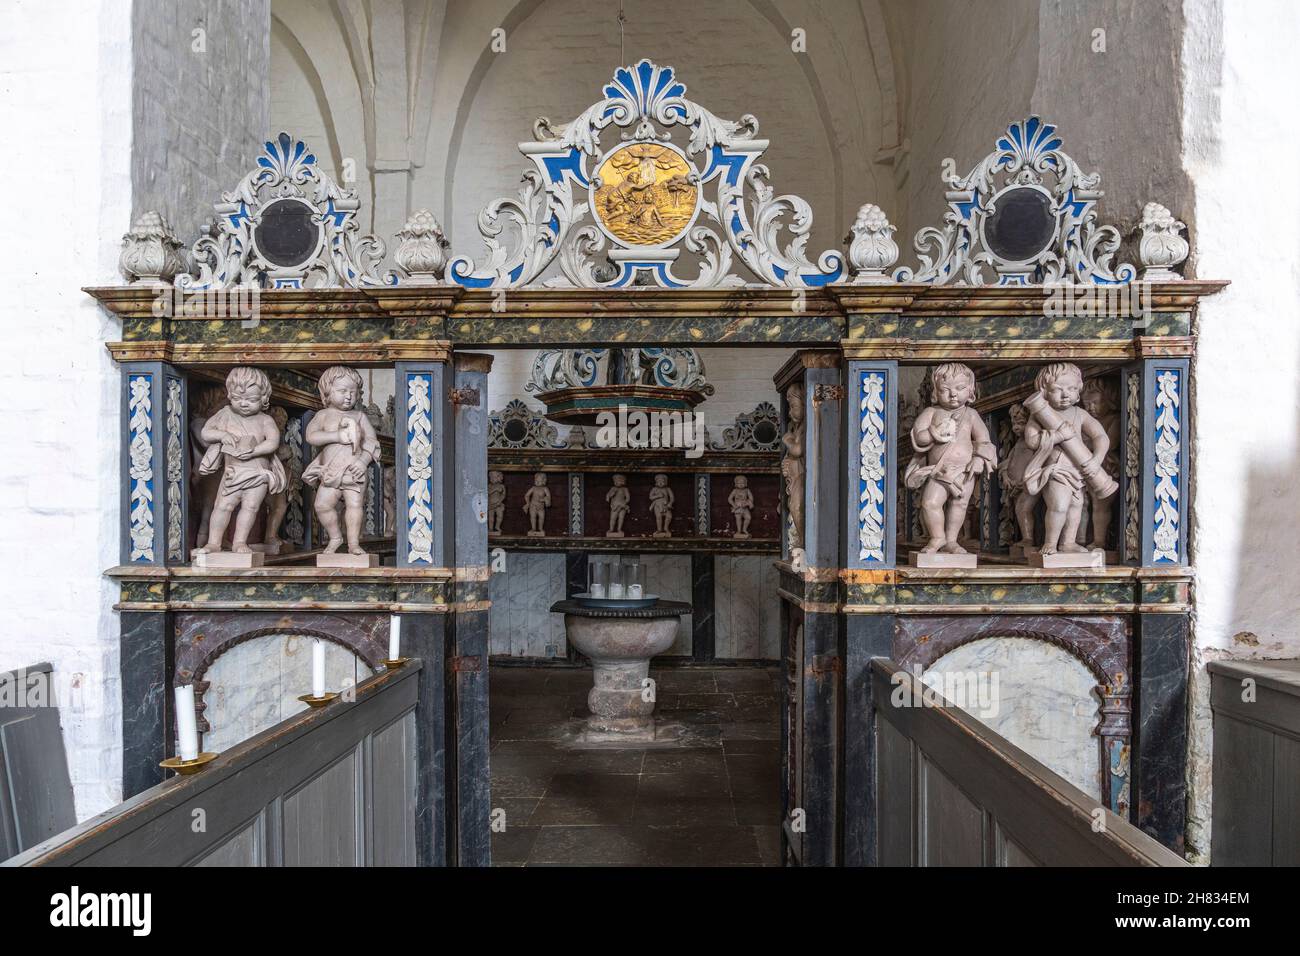 Au centre de la nef centrale se trouve la salle baptismal avec 35 personnages d'enfants sculptés en bois.Abbaye de Børglum, Hjørring, Danemark Banque D'Images